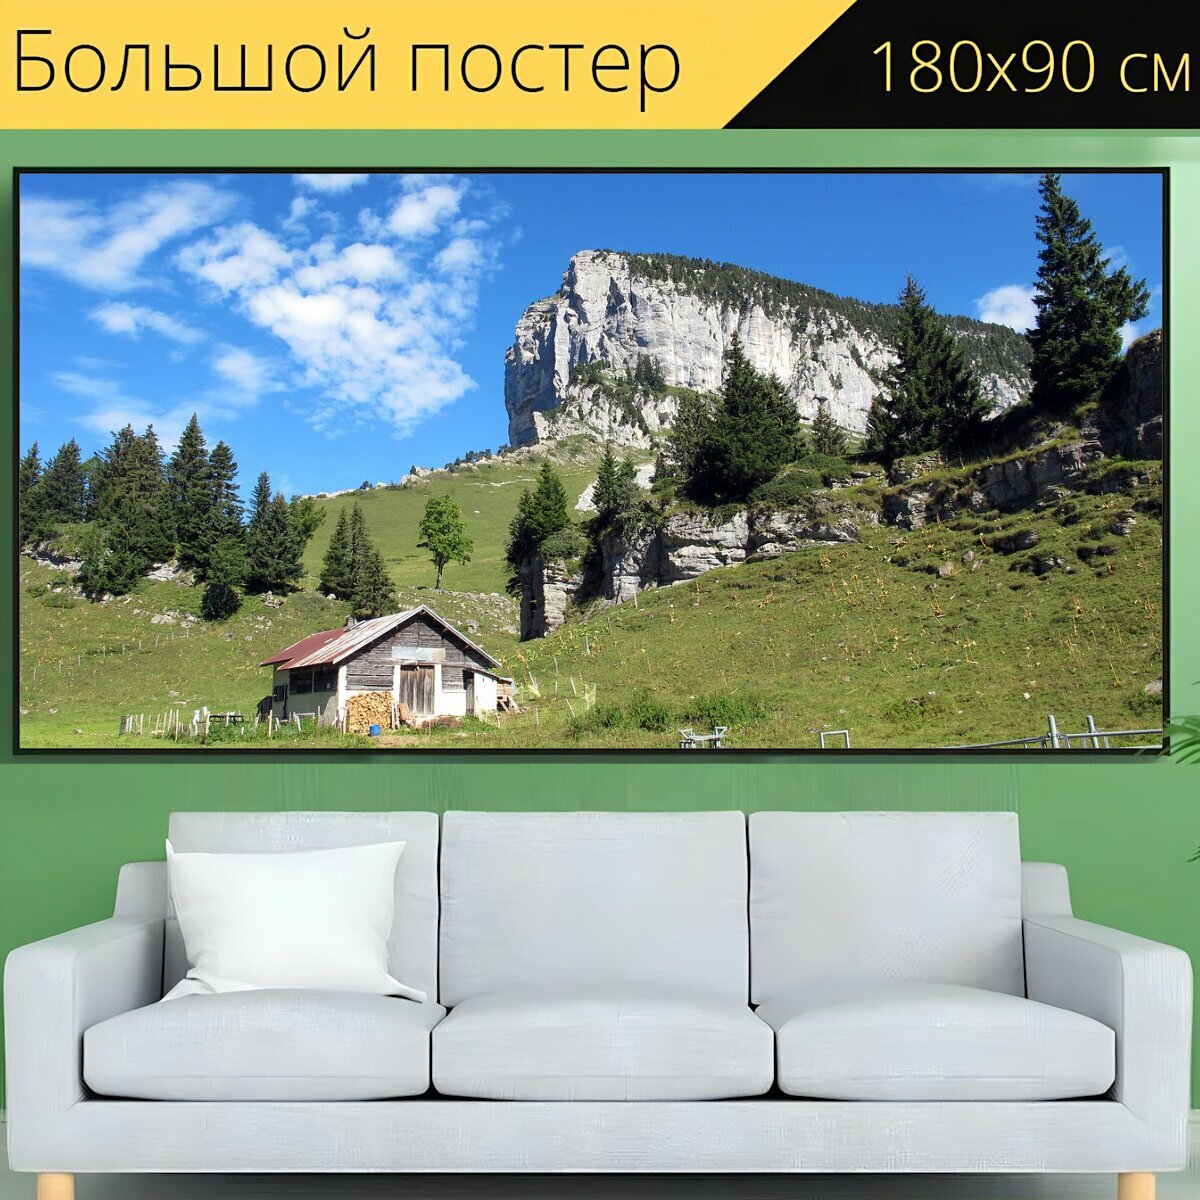 Большой постер "Альпийское шале, дом, поле" 180 x 90 см. для интерьера